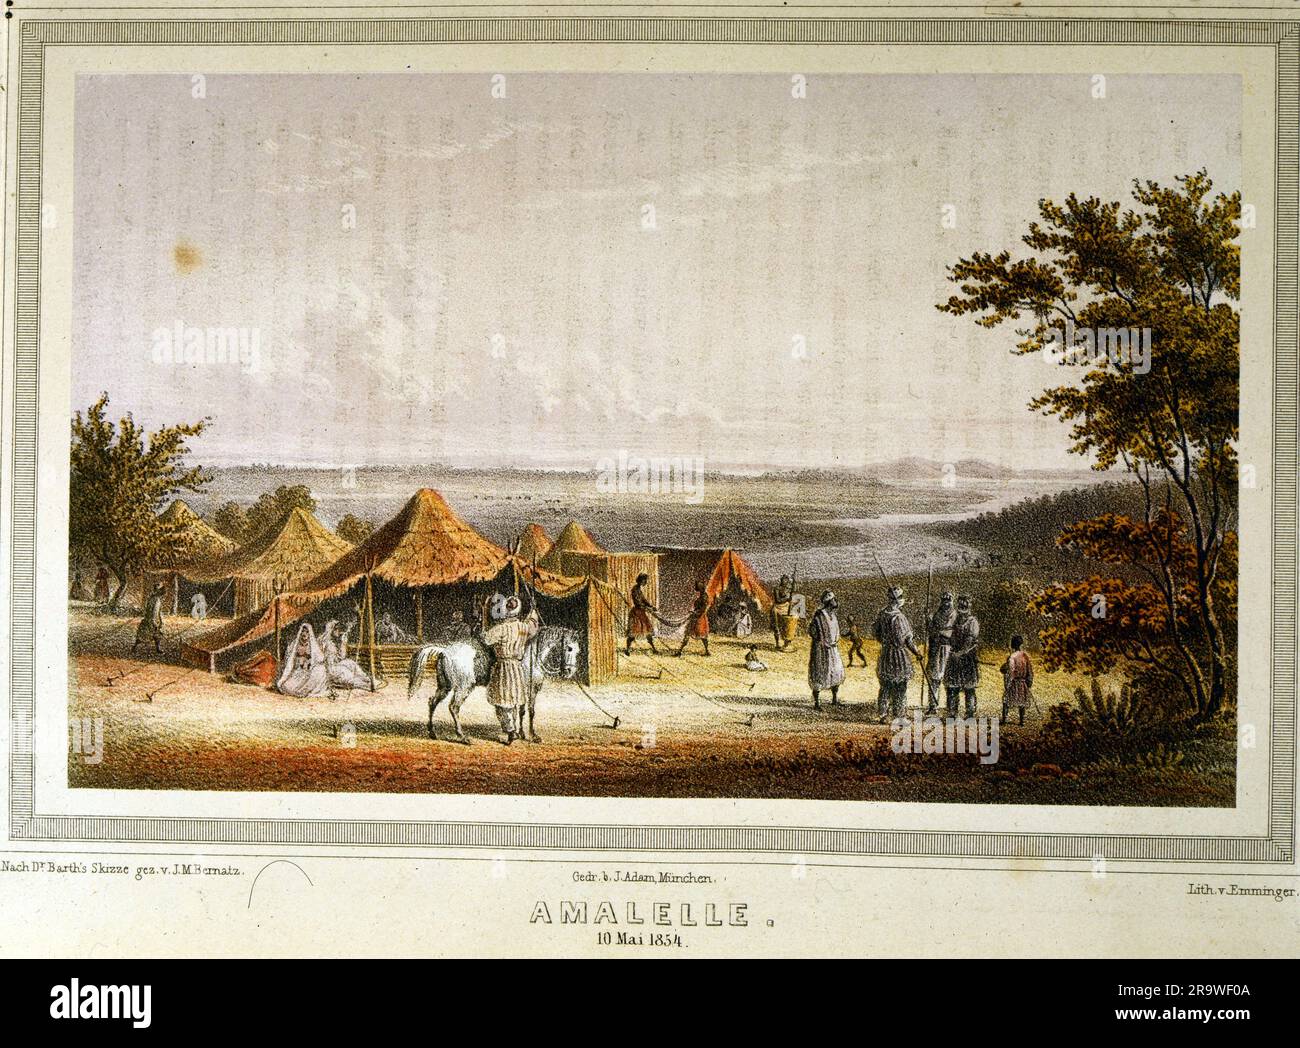 Géographie / Voyage, Afrique, paysages, Amalelle, 10,5.1854, INFO-AUTORISATION-DROITS-SUPPLÉMENTAIRES-NON-DISPONIBLE Banque D'Images